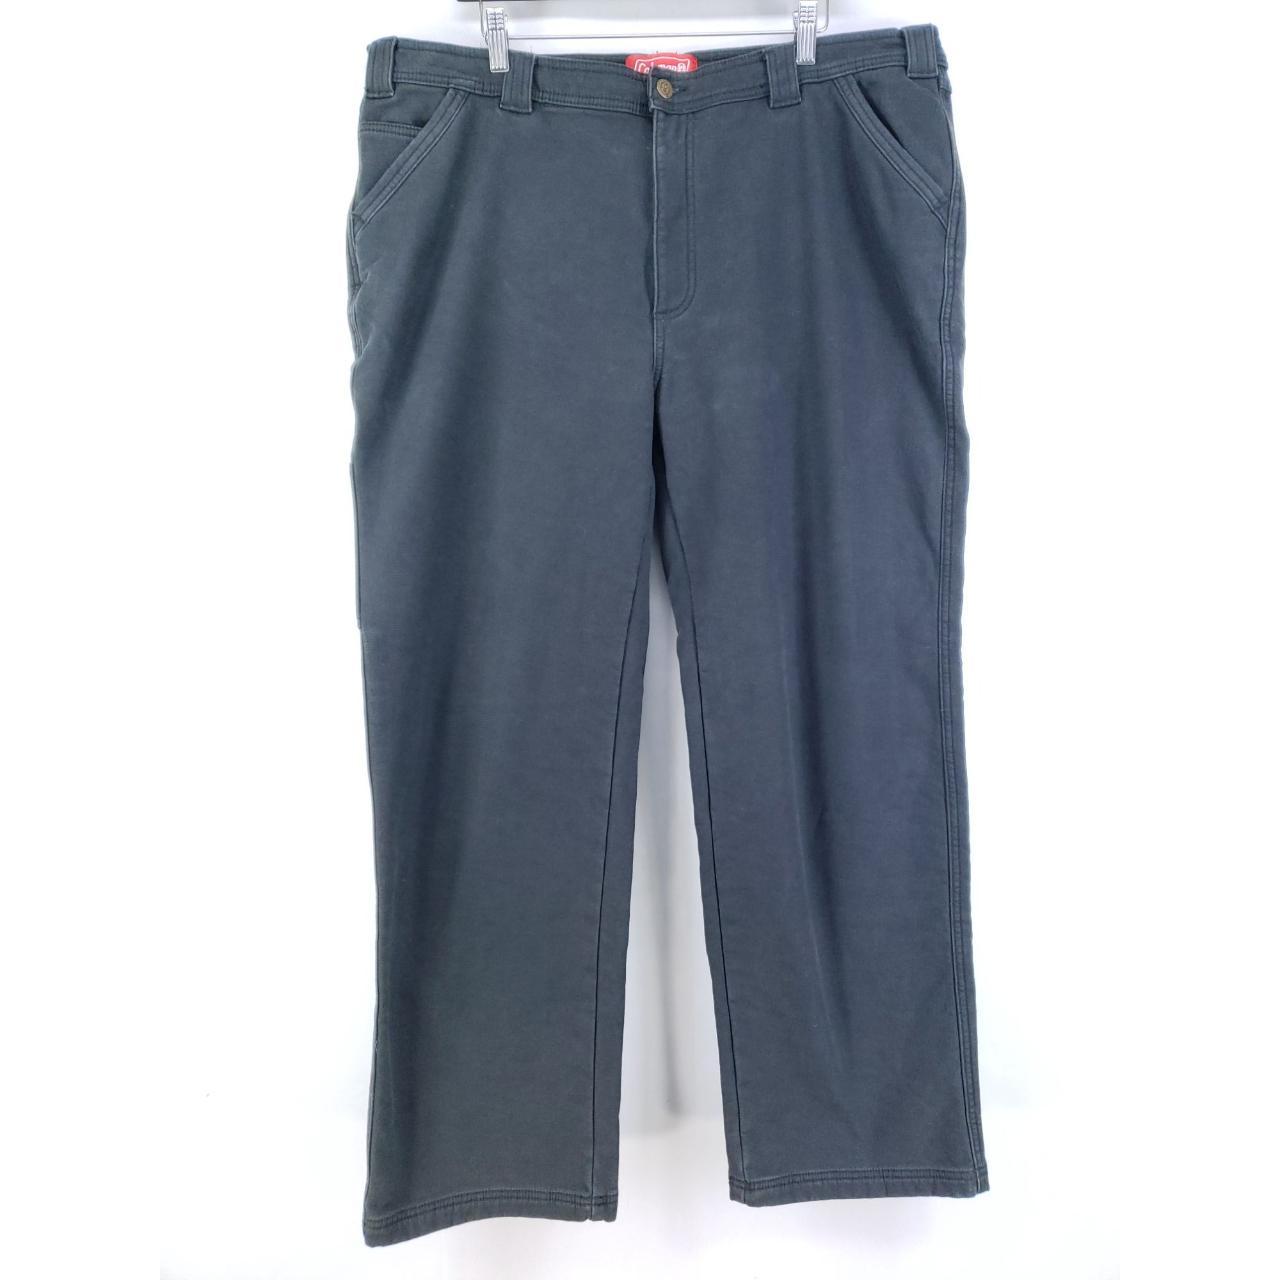 Coleman Fleece Lined Pants Men's Size 40x31 Gray - Depop